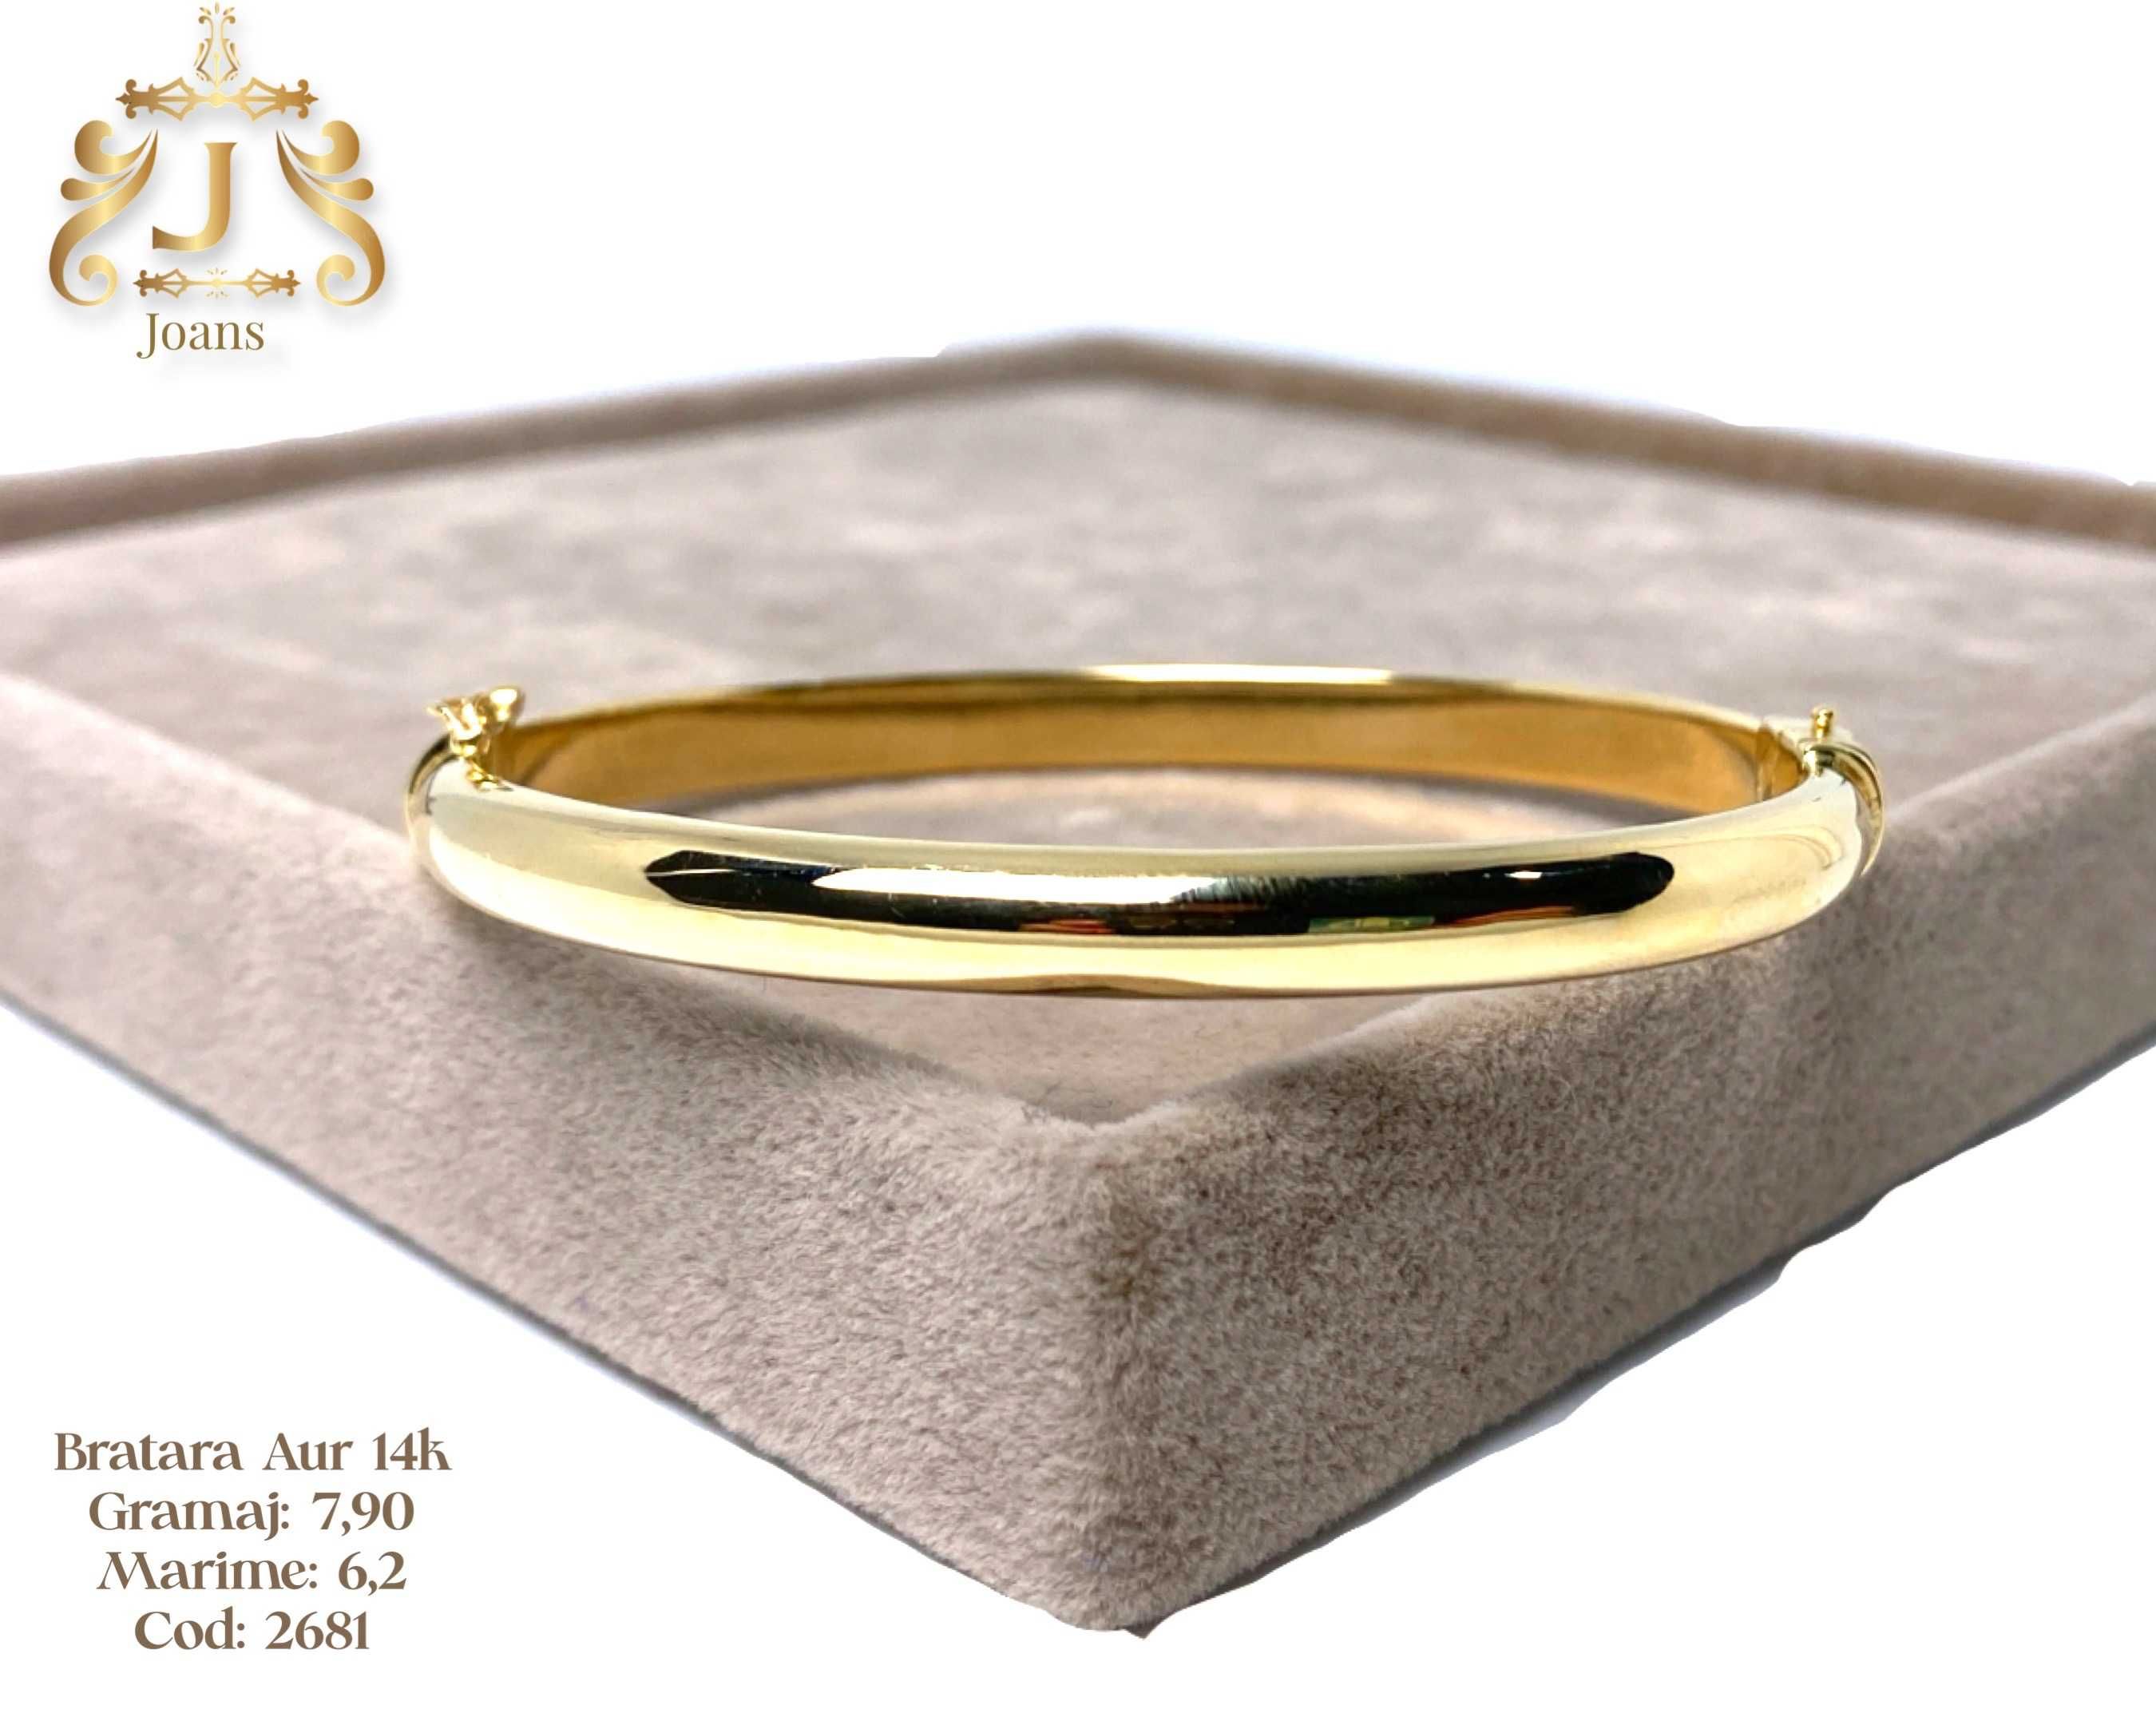 (2676) Bratara Aur 14k, 9,54 grame FB Bijoux Euro Gold